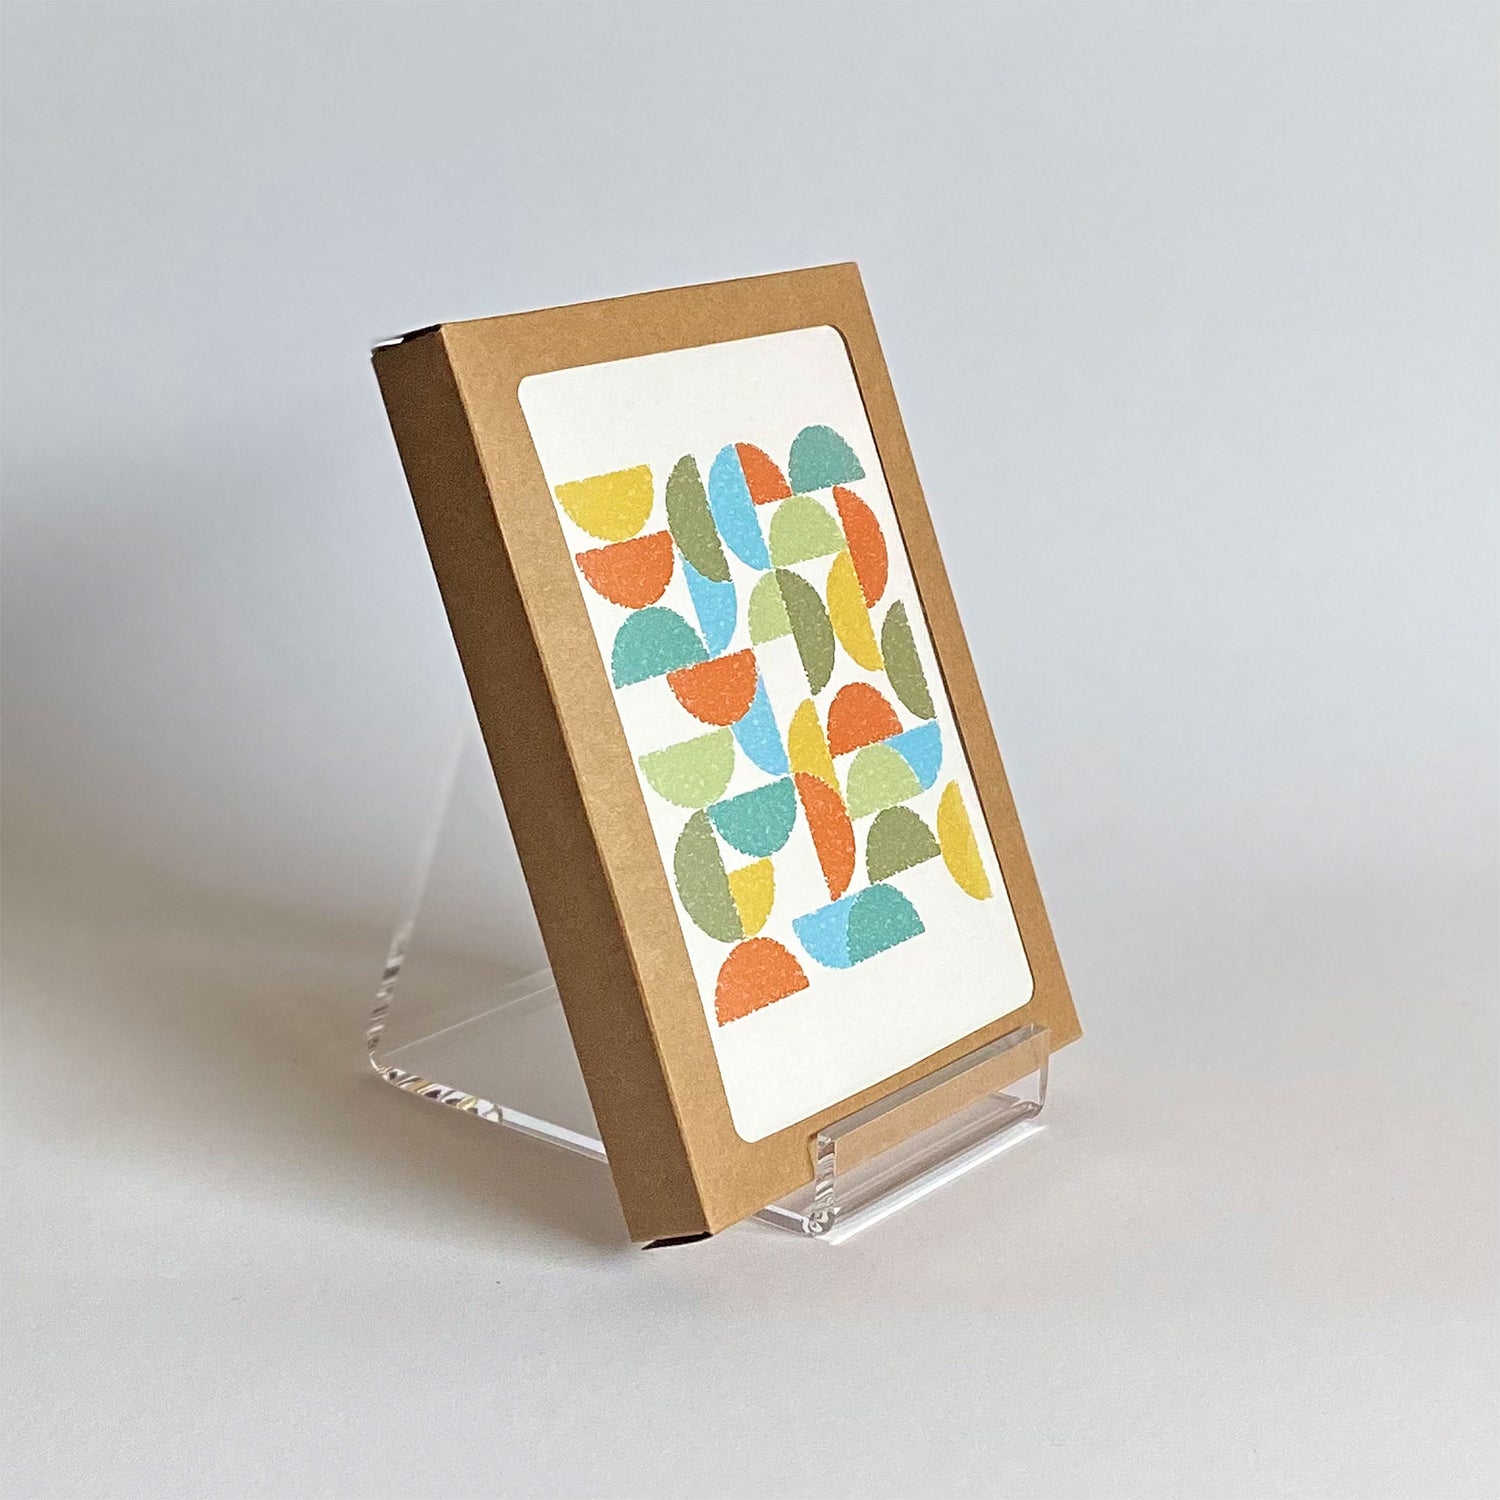 Productafbeelding, foto wenskaart "ronde kleuren naar terra" gepresenteerd in zijn 10-Pack verpakking